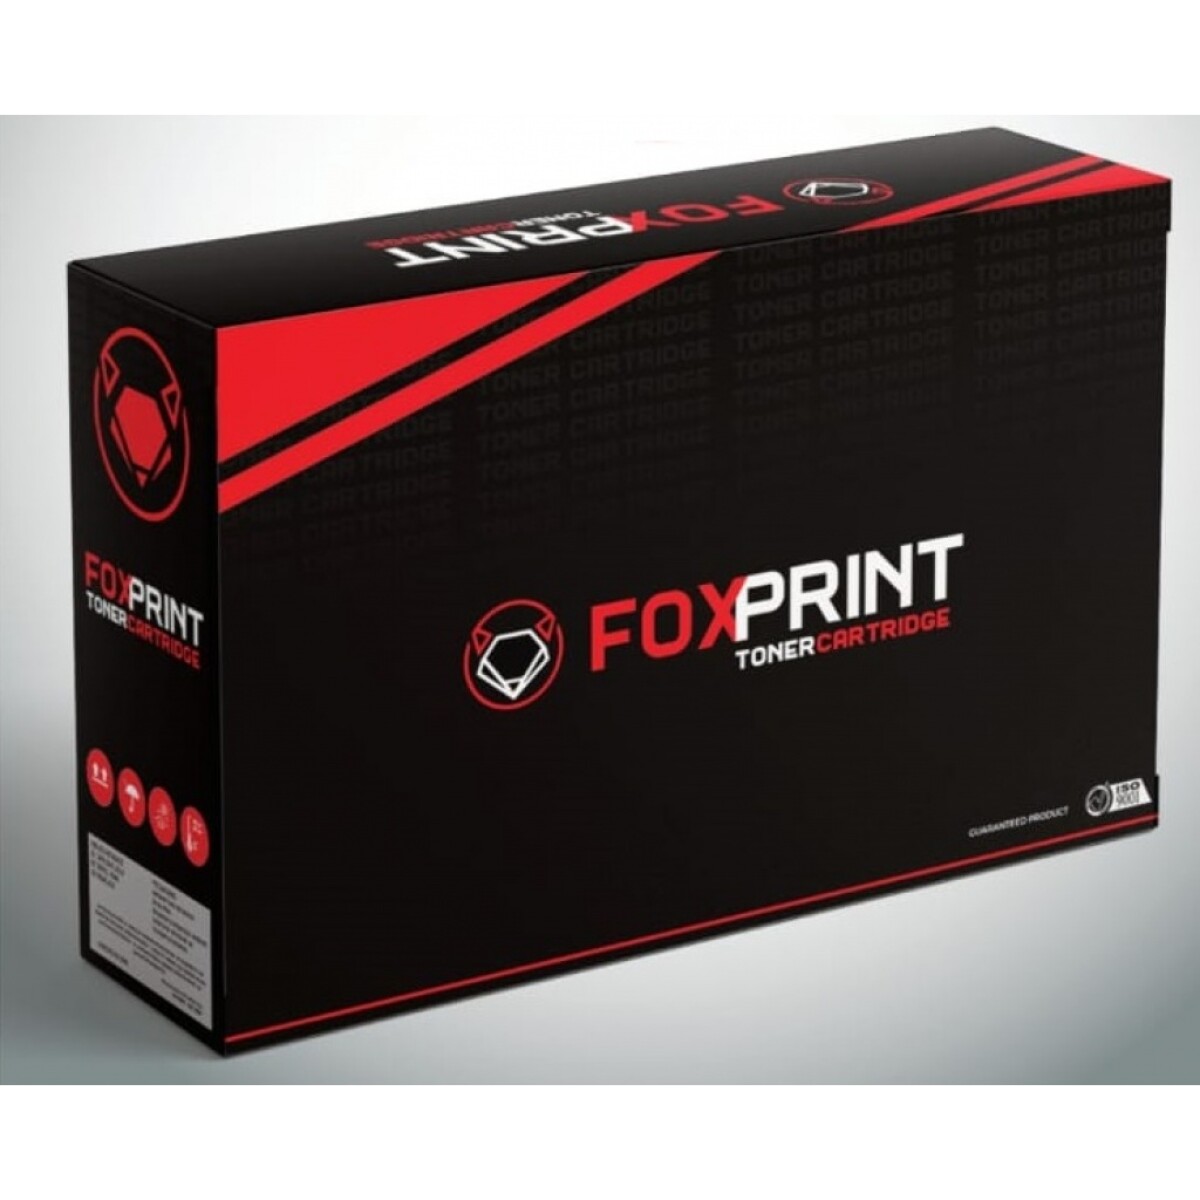 Toner Foxprint Samsung MLTD101 - 001 